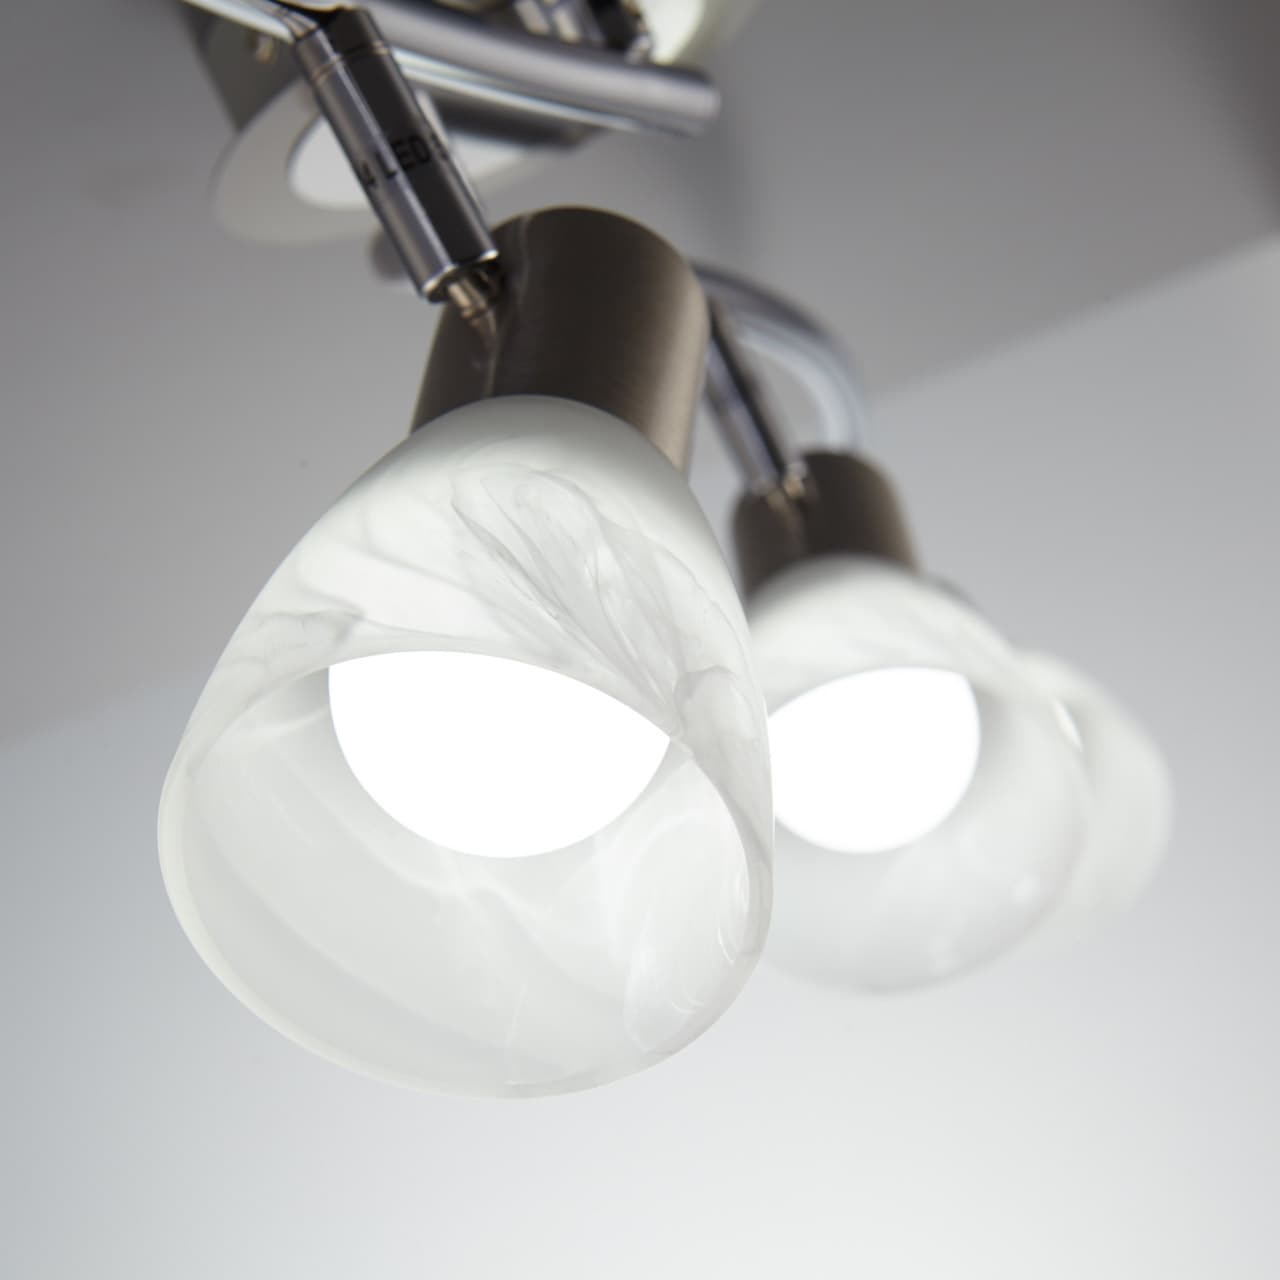 B.K.Licht LED Deckenstrahler, 4 flammig-flammig, LED Deckenlampe Wohnzimmer schwenkbar E14 Metall Glas Spot Leuchte